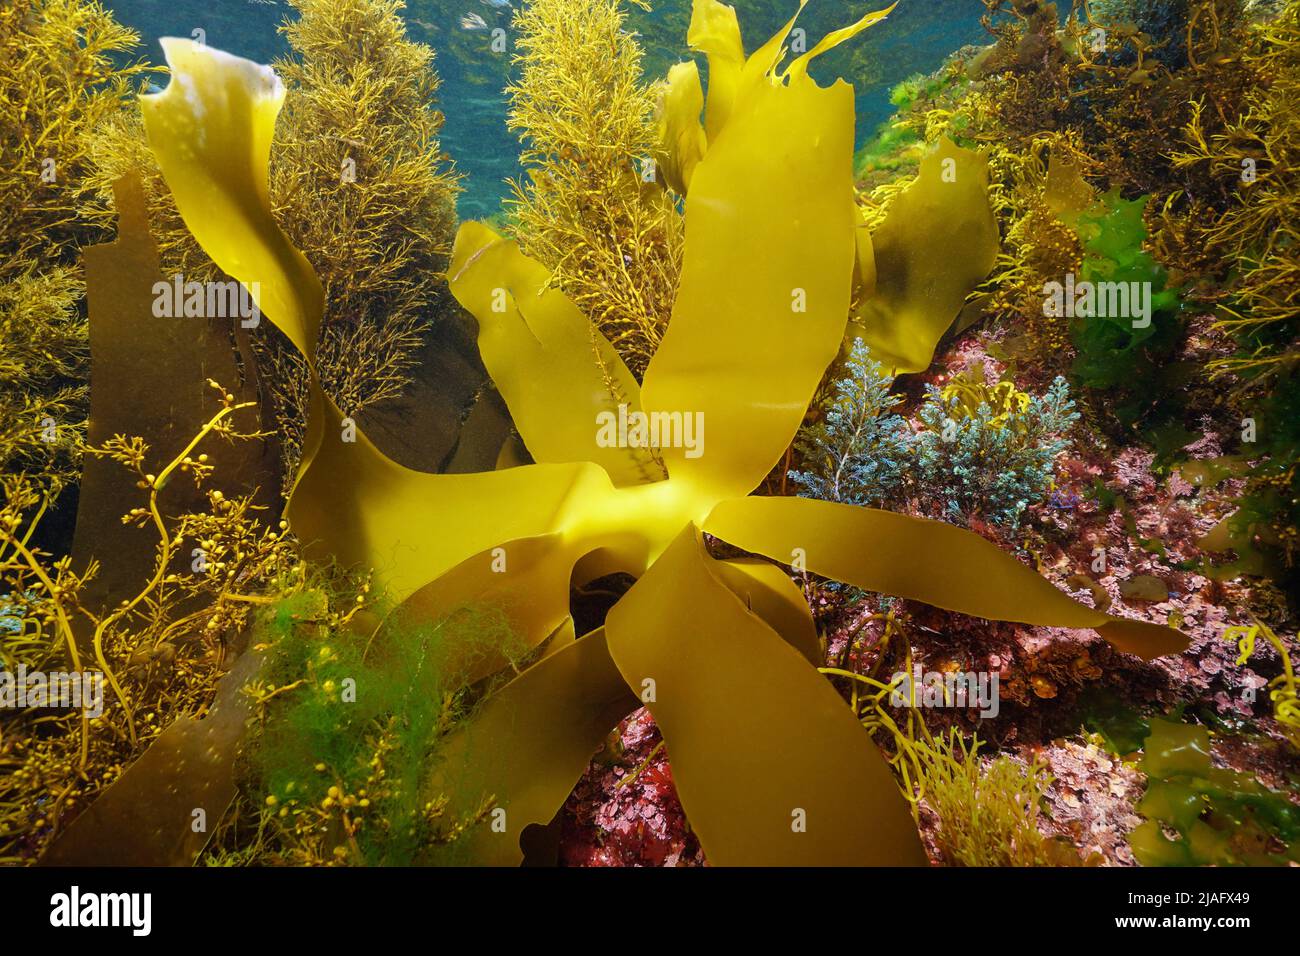 Varias algas marinas submarinas, algas marinas del océano Atlántico, España Foto de stock